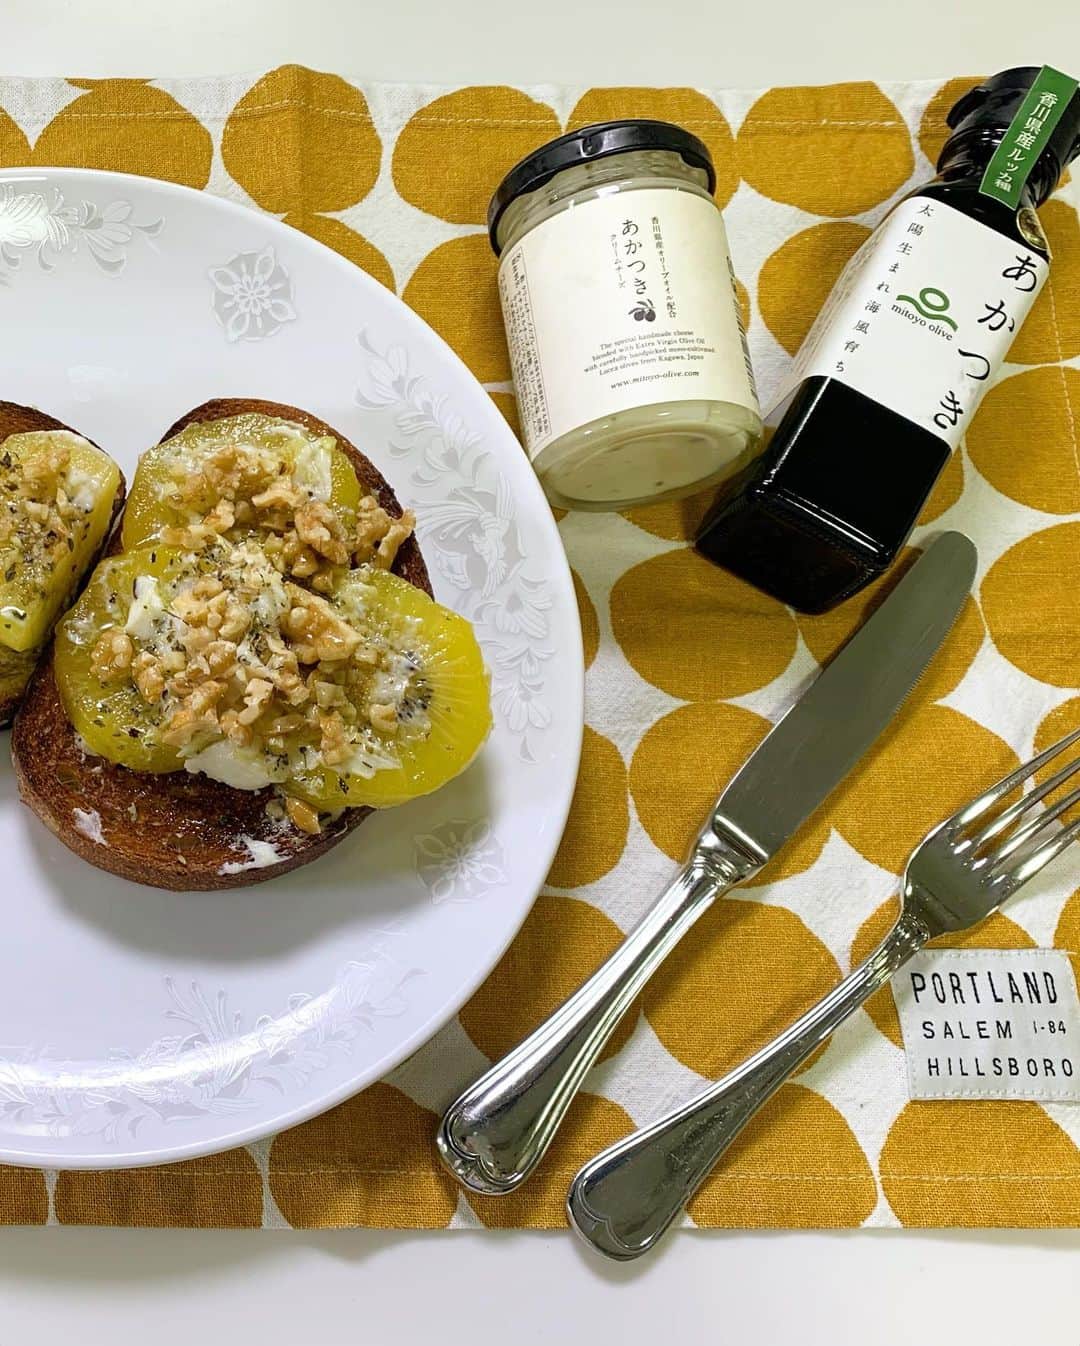 木内晶子のインスタグラム：「本日香川県産Orive Marcheオンラインツアー第2回目が開催されました！皆様ありがとうございました。三豊オリーブの宮武さんにゲストで来て頂きレシピを教わり「あかつき」オリーブオイルを使わせて頂きました。「キュウイのチーズトーストオリーブオイルがけ」こちらにはオリーブの品種「ルッカ」をトマトおでんには「ミッション」を使用しました。品種によりスパイシー、マイルド等お好みで楽しめました。あかつきクリームチーズととっても甘くてビタミンCがたっぷり入った香川県産フルーツさぬきゴールドとエキストラバージンオリーブオイル、くるみにオレガノをかけて身体が元気になる美味しさでした。第3回目は2月27日です。是非zoomにてご参加お待ちしております。https://www.my-kagawa.jp/olivemarche/ #三豊オリーブ#あかつき#香川県産#オリーブオリーブオイル#さぬきゴールド#クリームチーズ#トマトおでん#オリーブ焙茶#多度津産#蒼のダイヤ#空井農園さん#ご協力ありがとうございました」